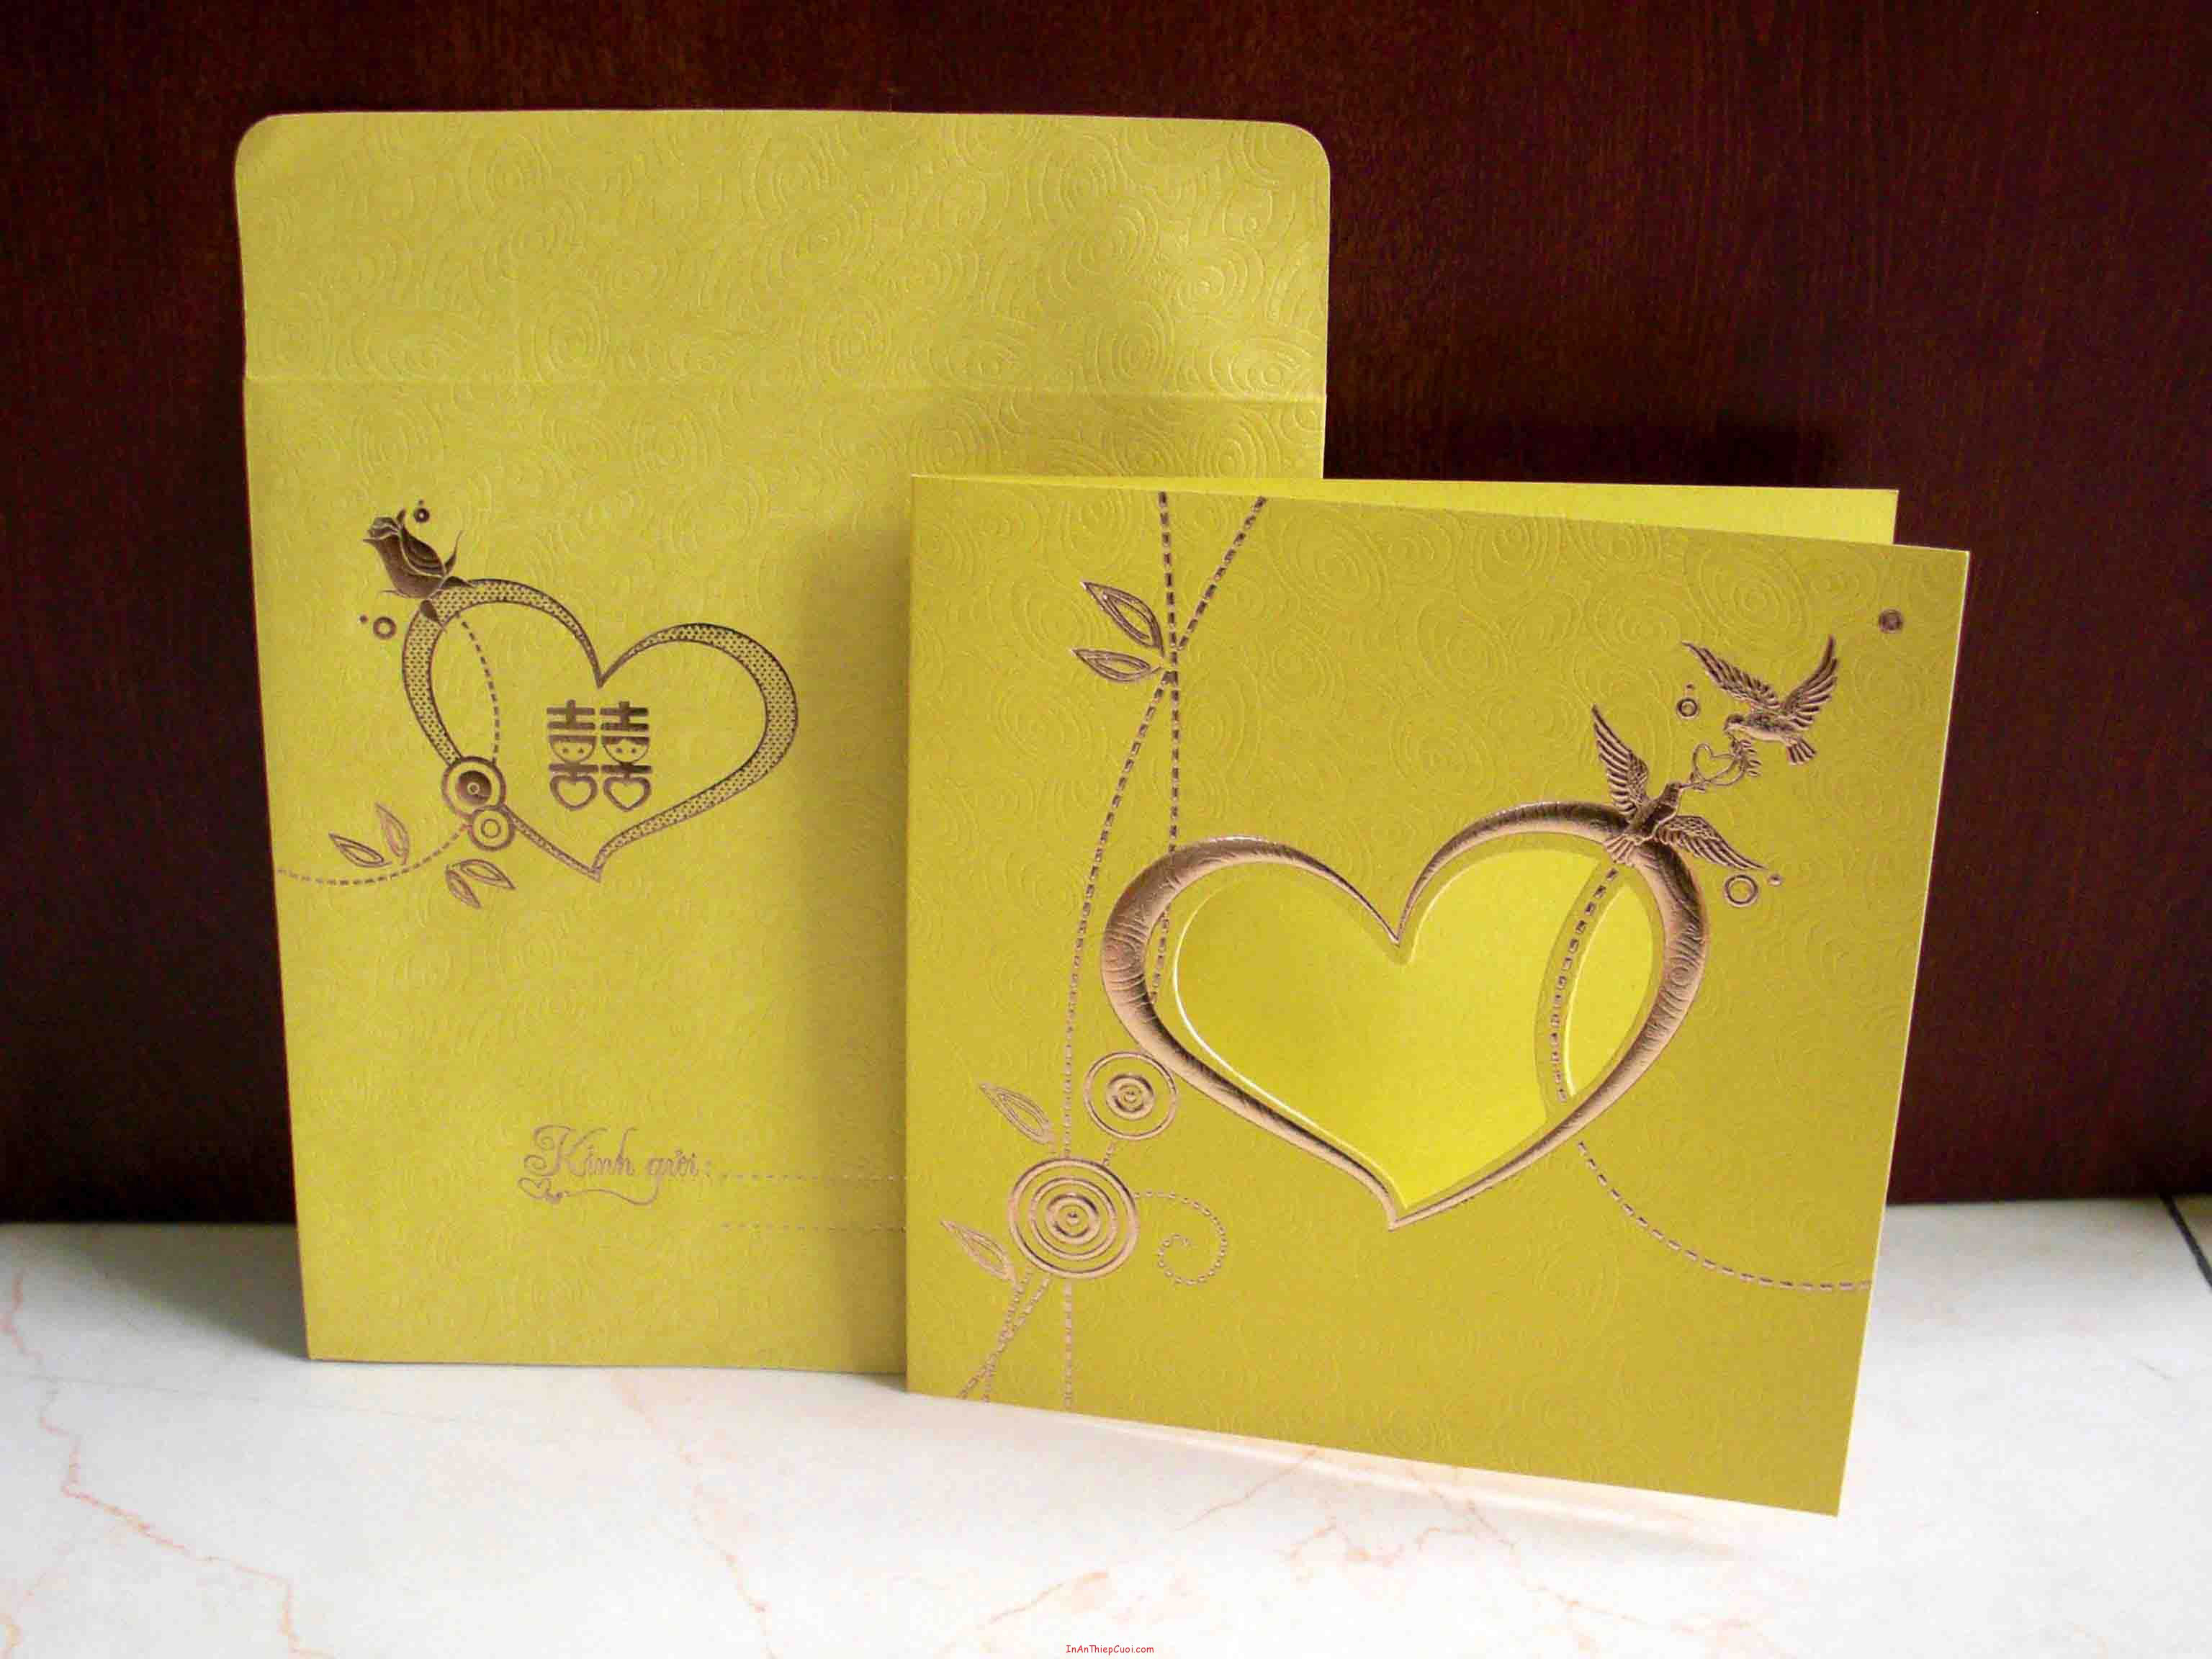 Thiệp cưới đẹp màu vàng hoa văn chim uyên ương